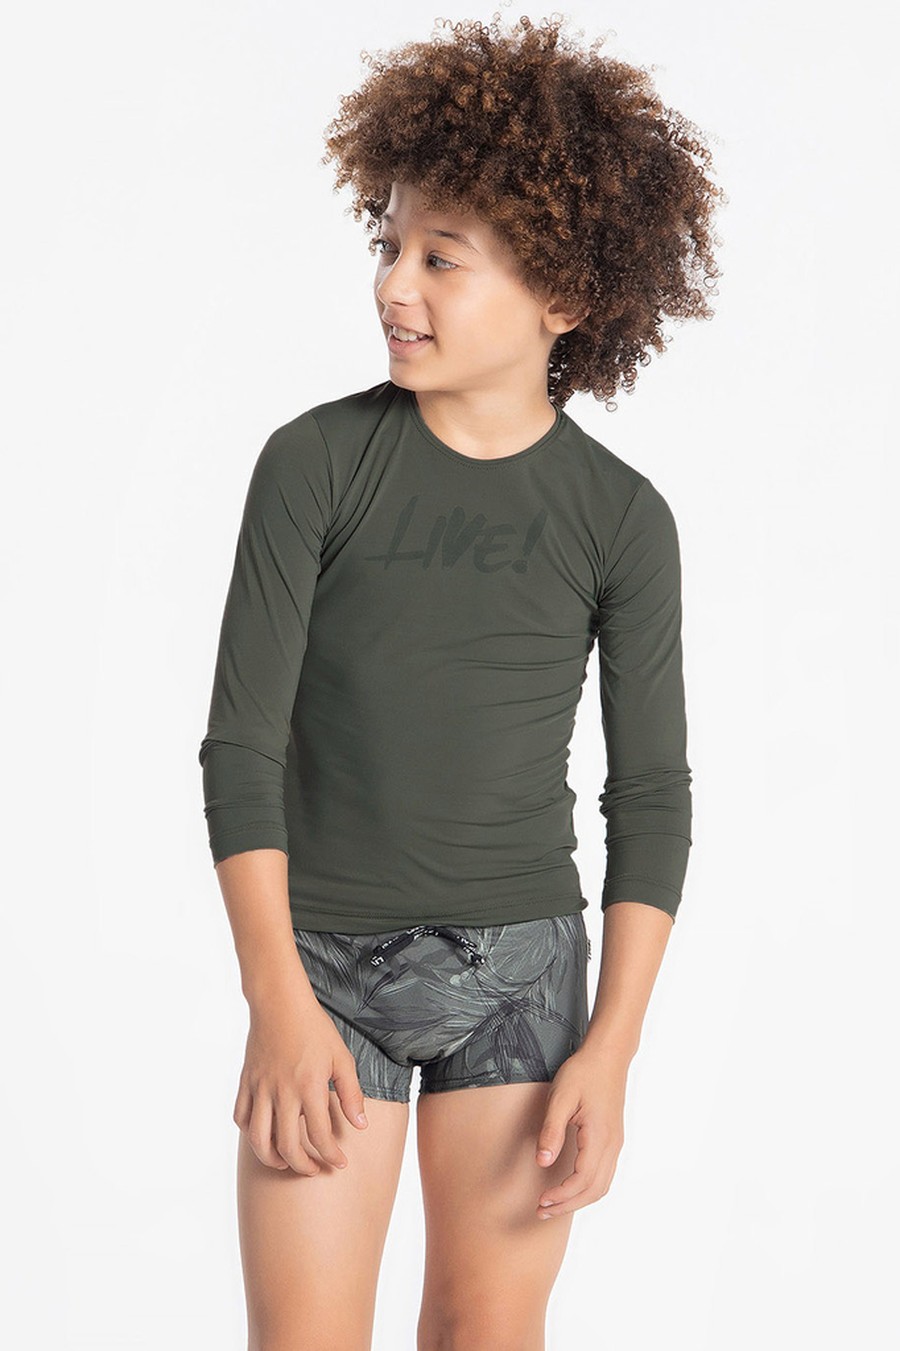 blusa infantil verde militar BC887 live